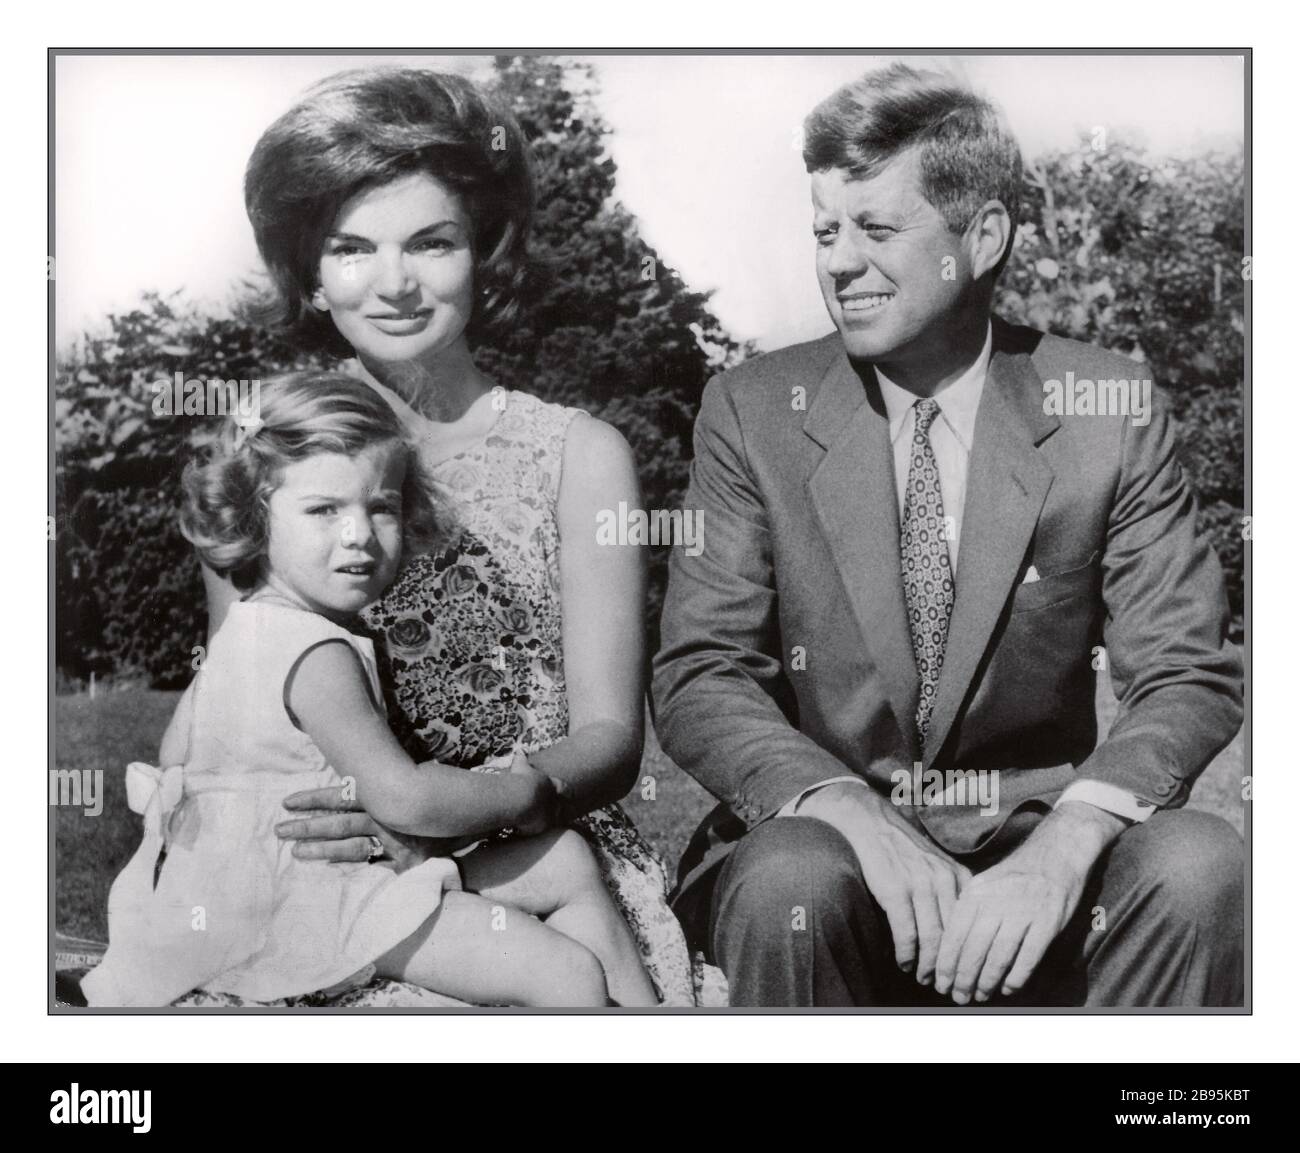 JFK Democratic Presidential Nominee, Senator John F. Kennedy Archiv Kampagne Foto mit seiner Familie im Sommergarten 21. Juli. 1960 mit seiner Frau Jacqueline Kennedy, die Caroline Kennedy Hyannis Port USA hält Stockfoto